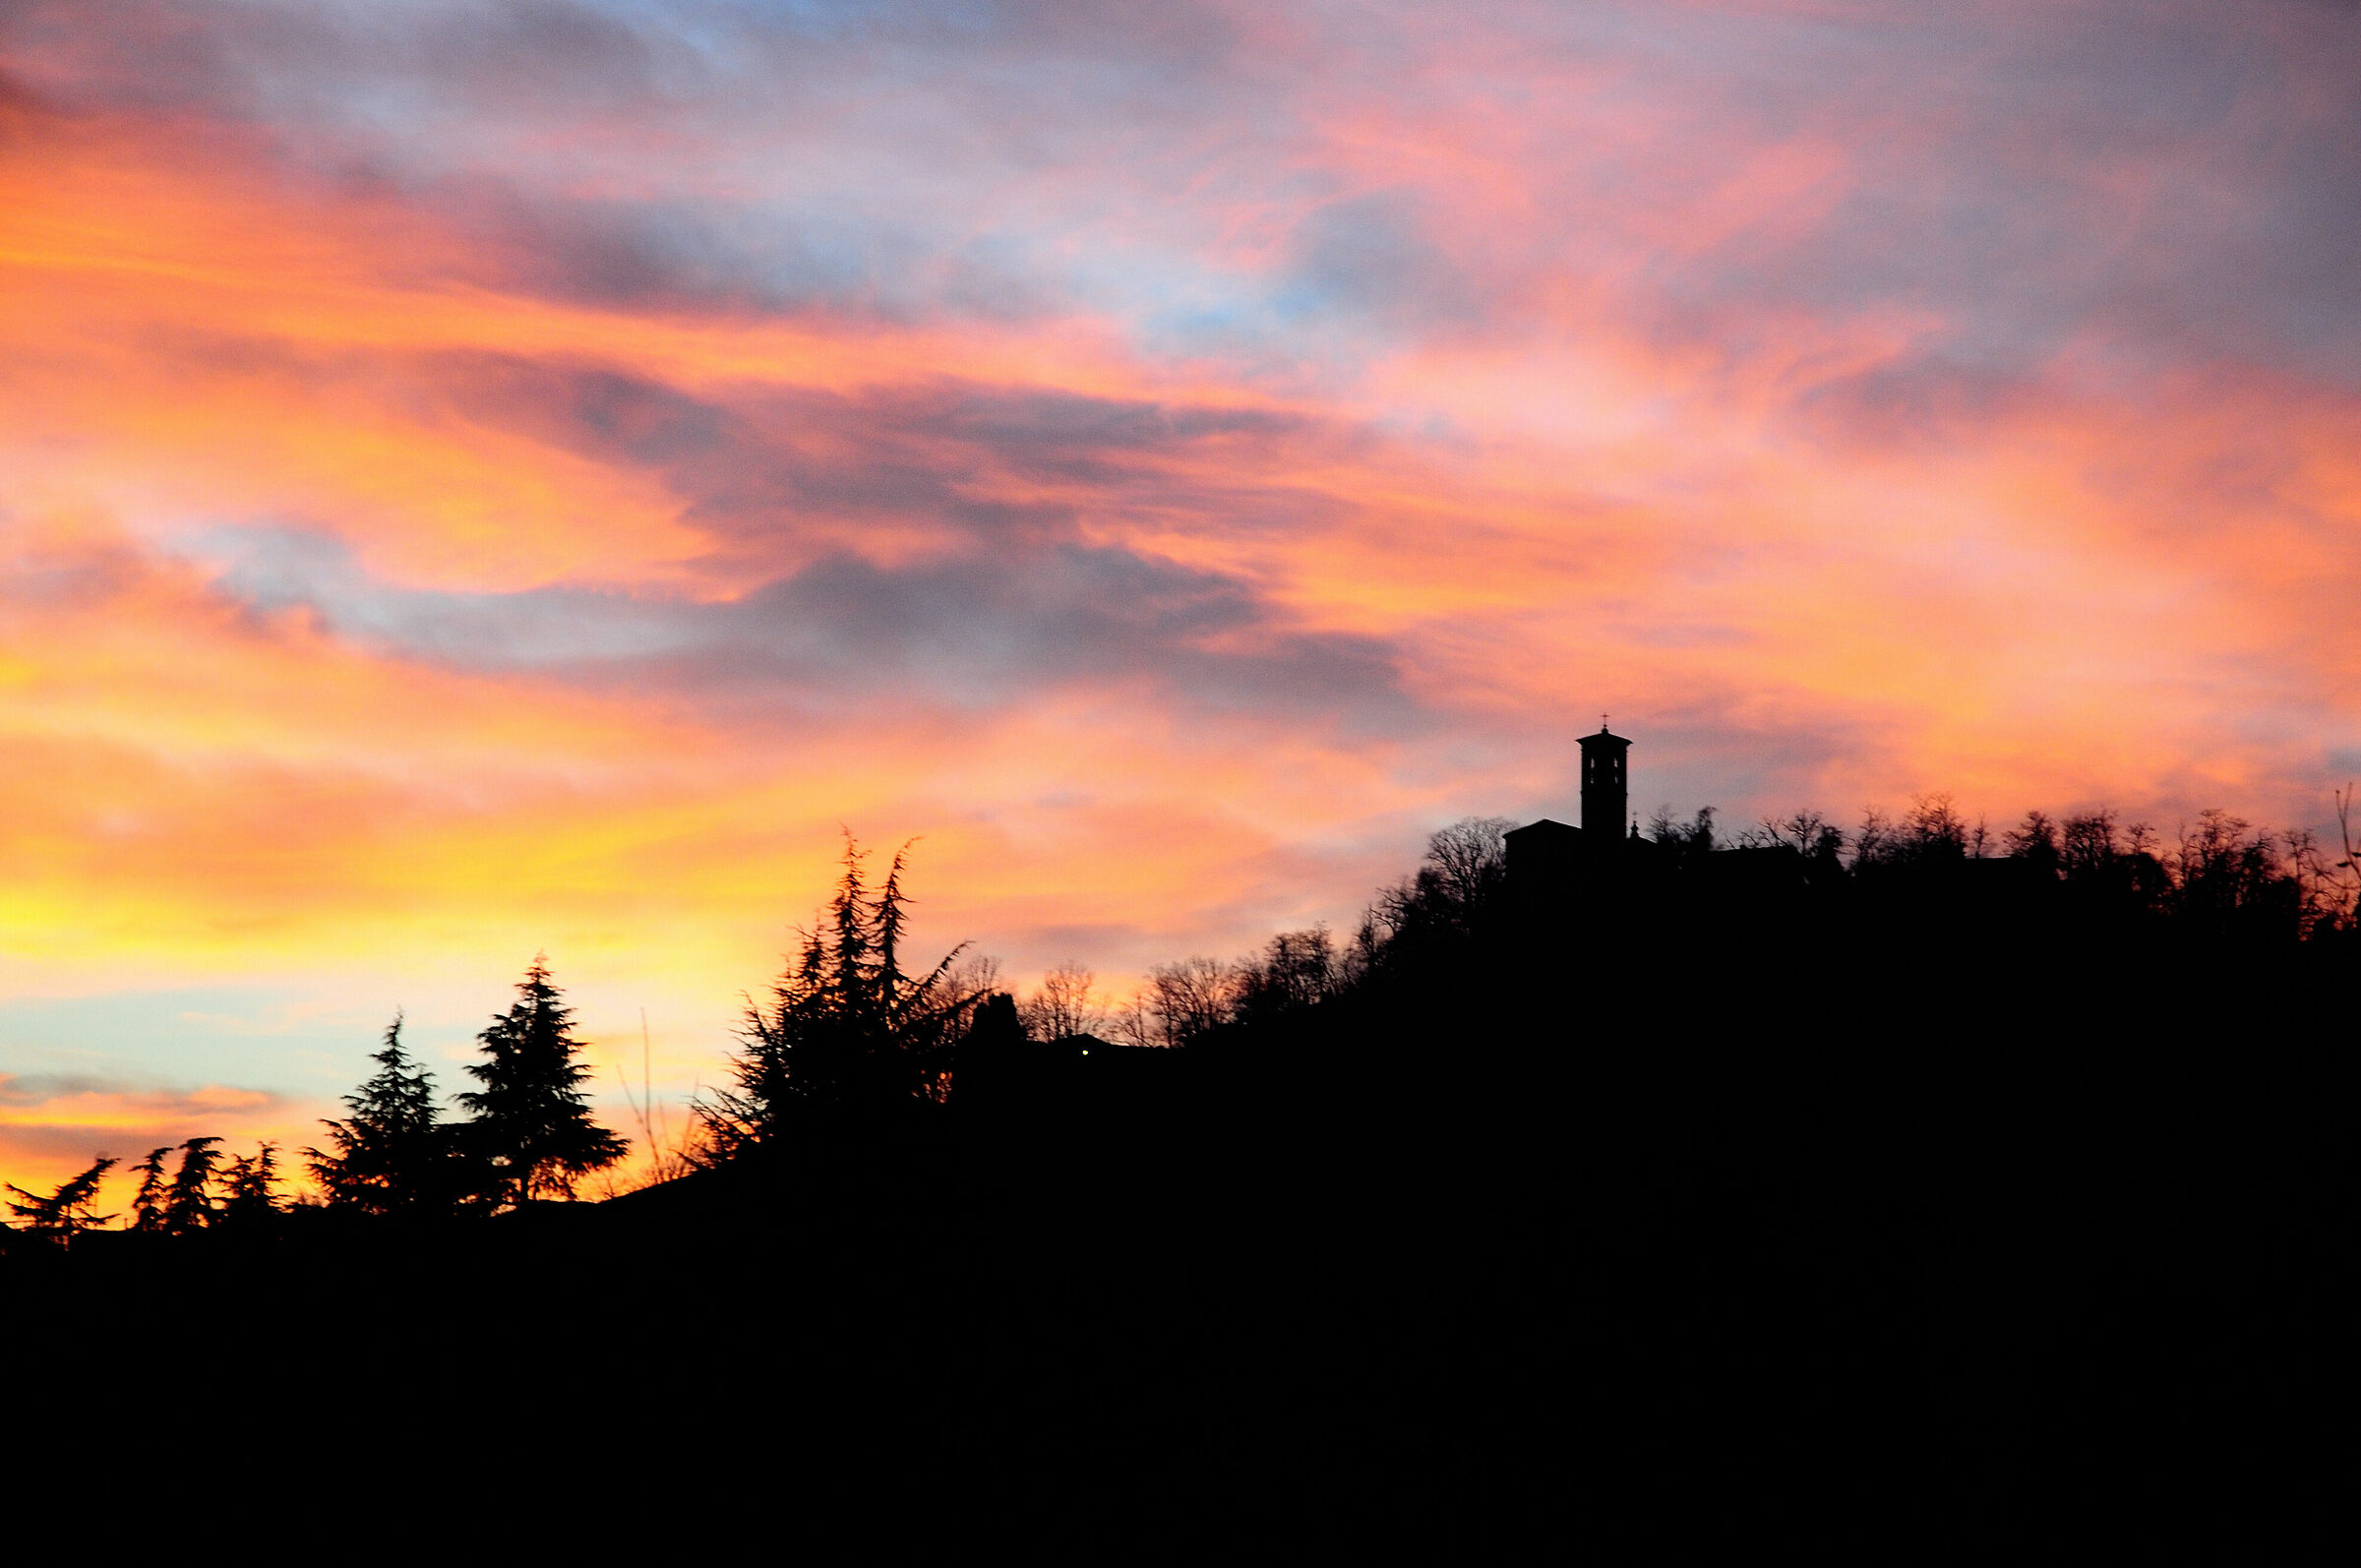 Sunset over the hills of Reggio Emilia...